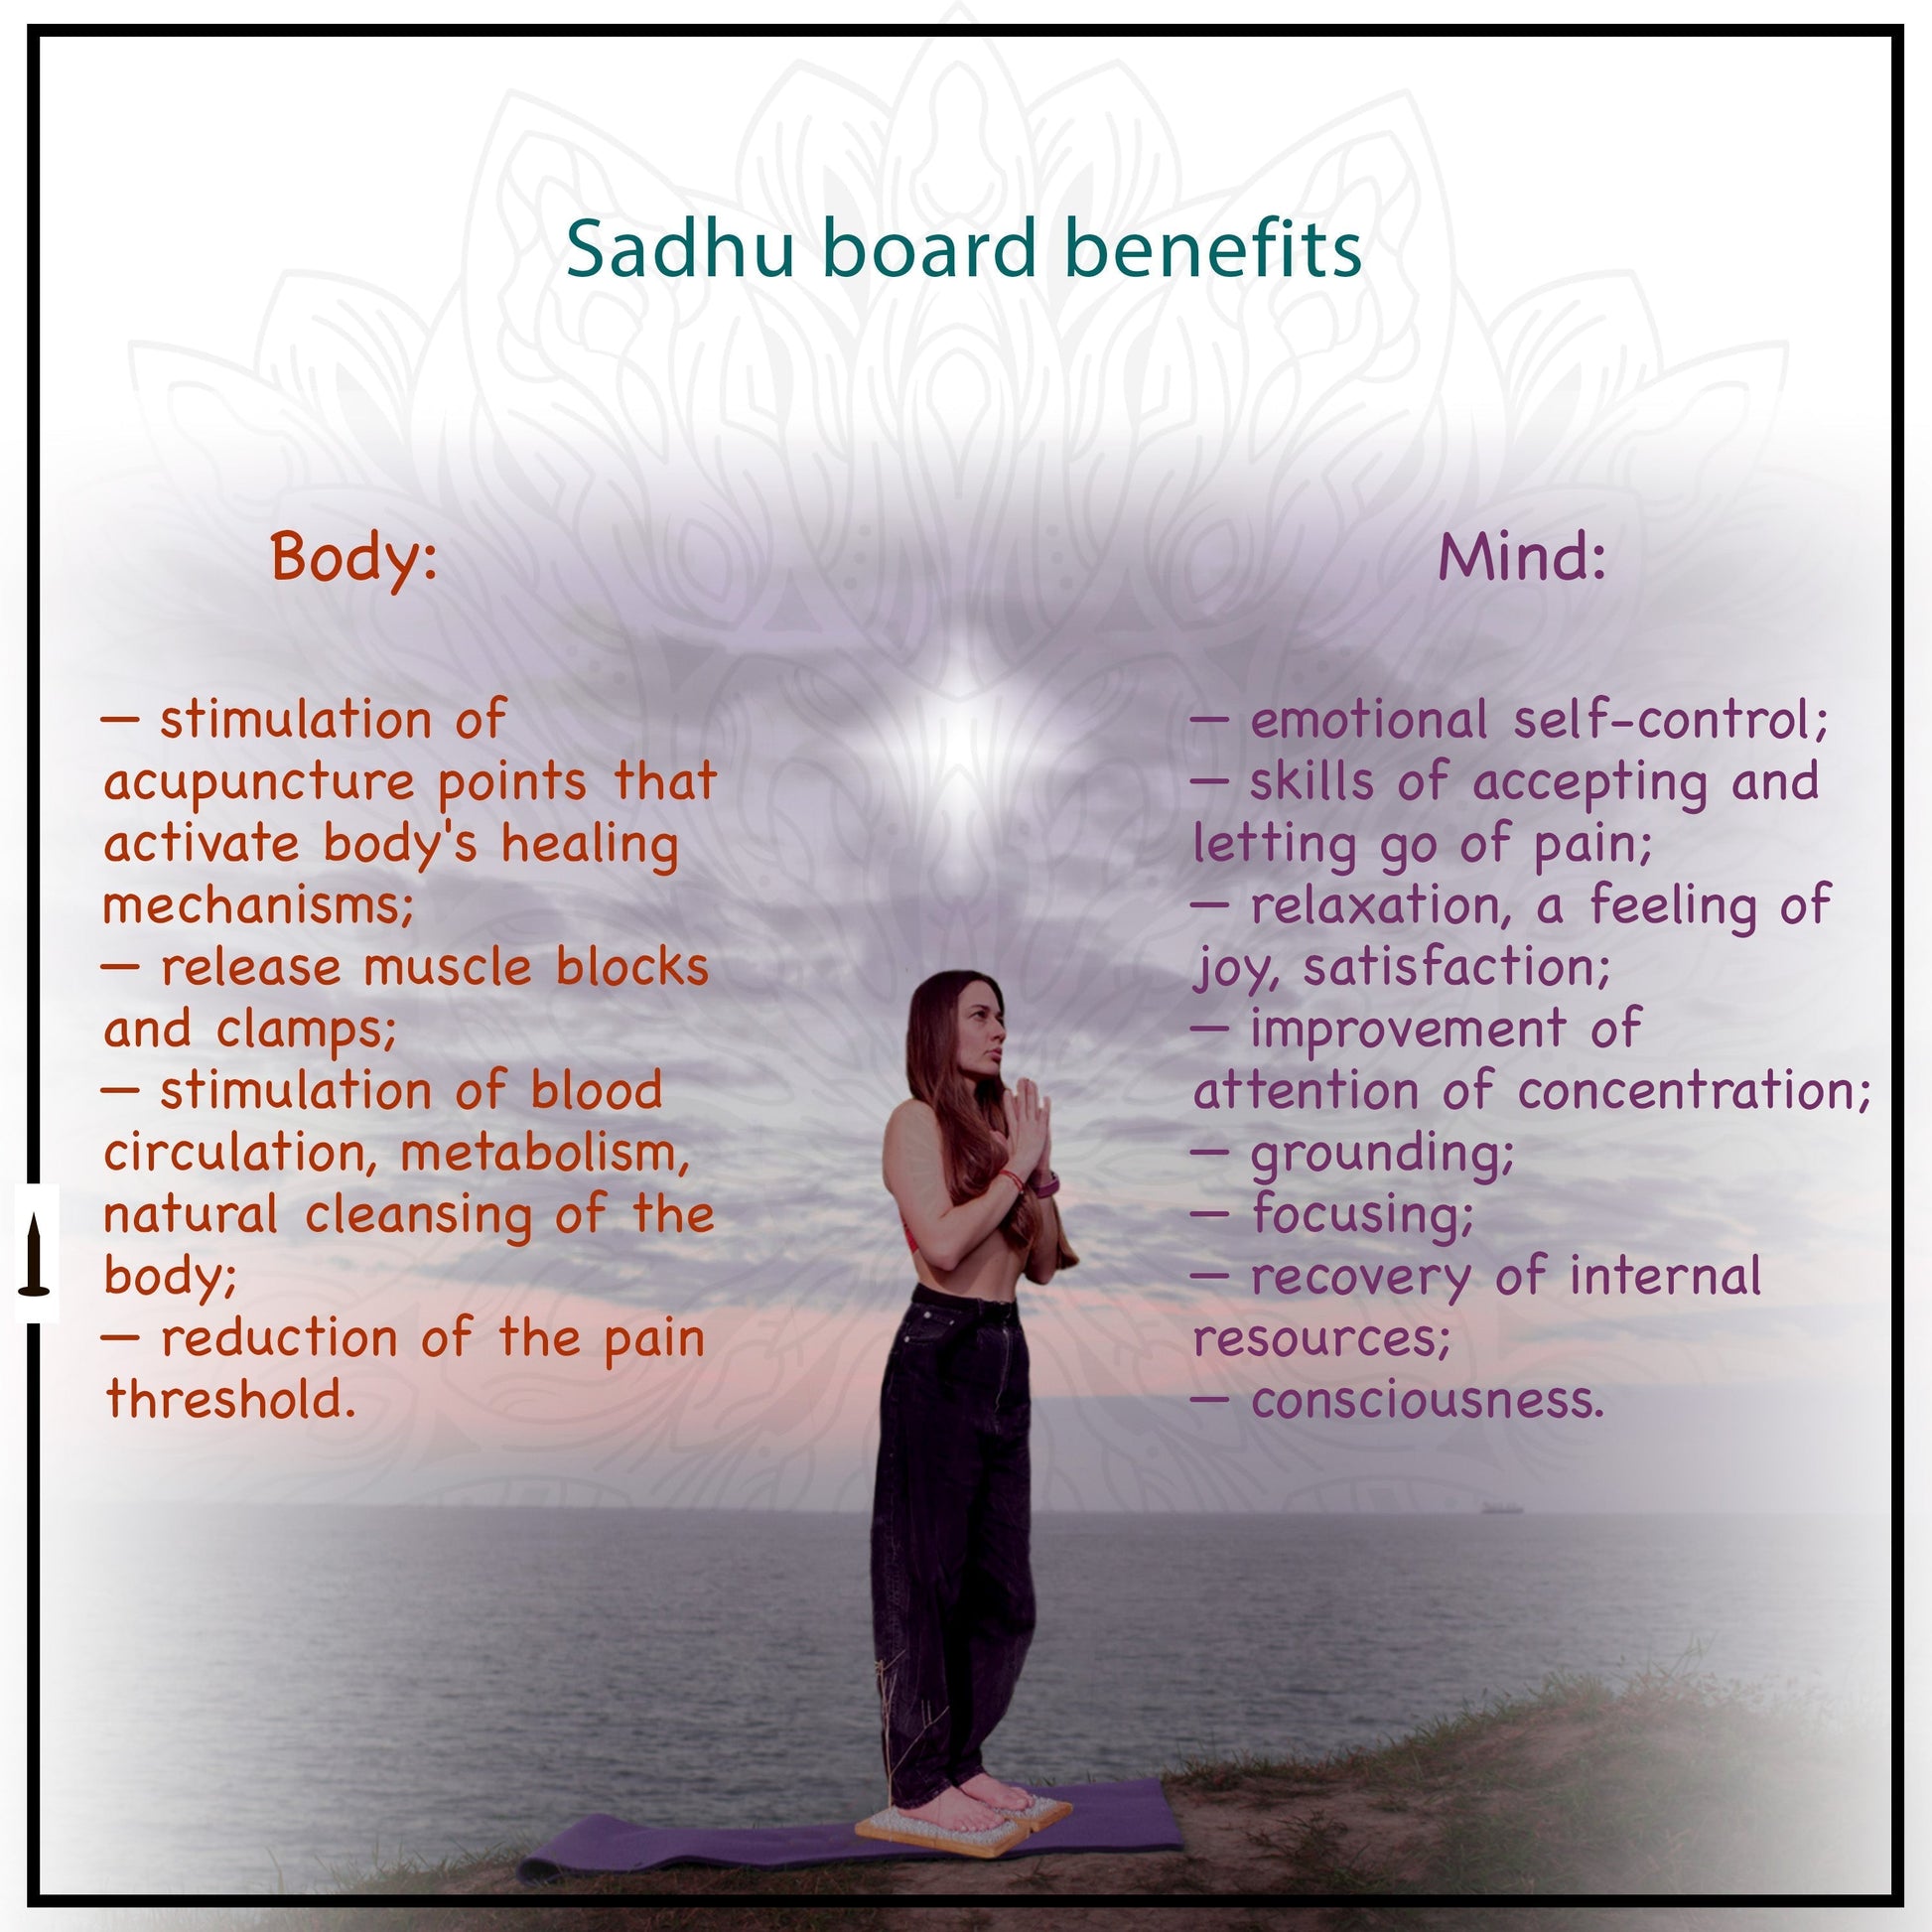 sadhu board benefits